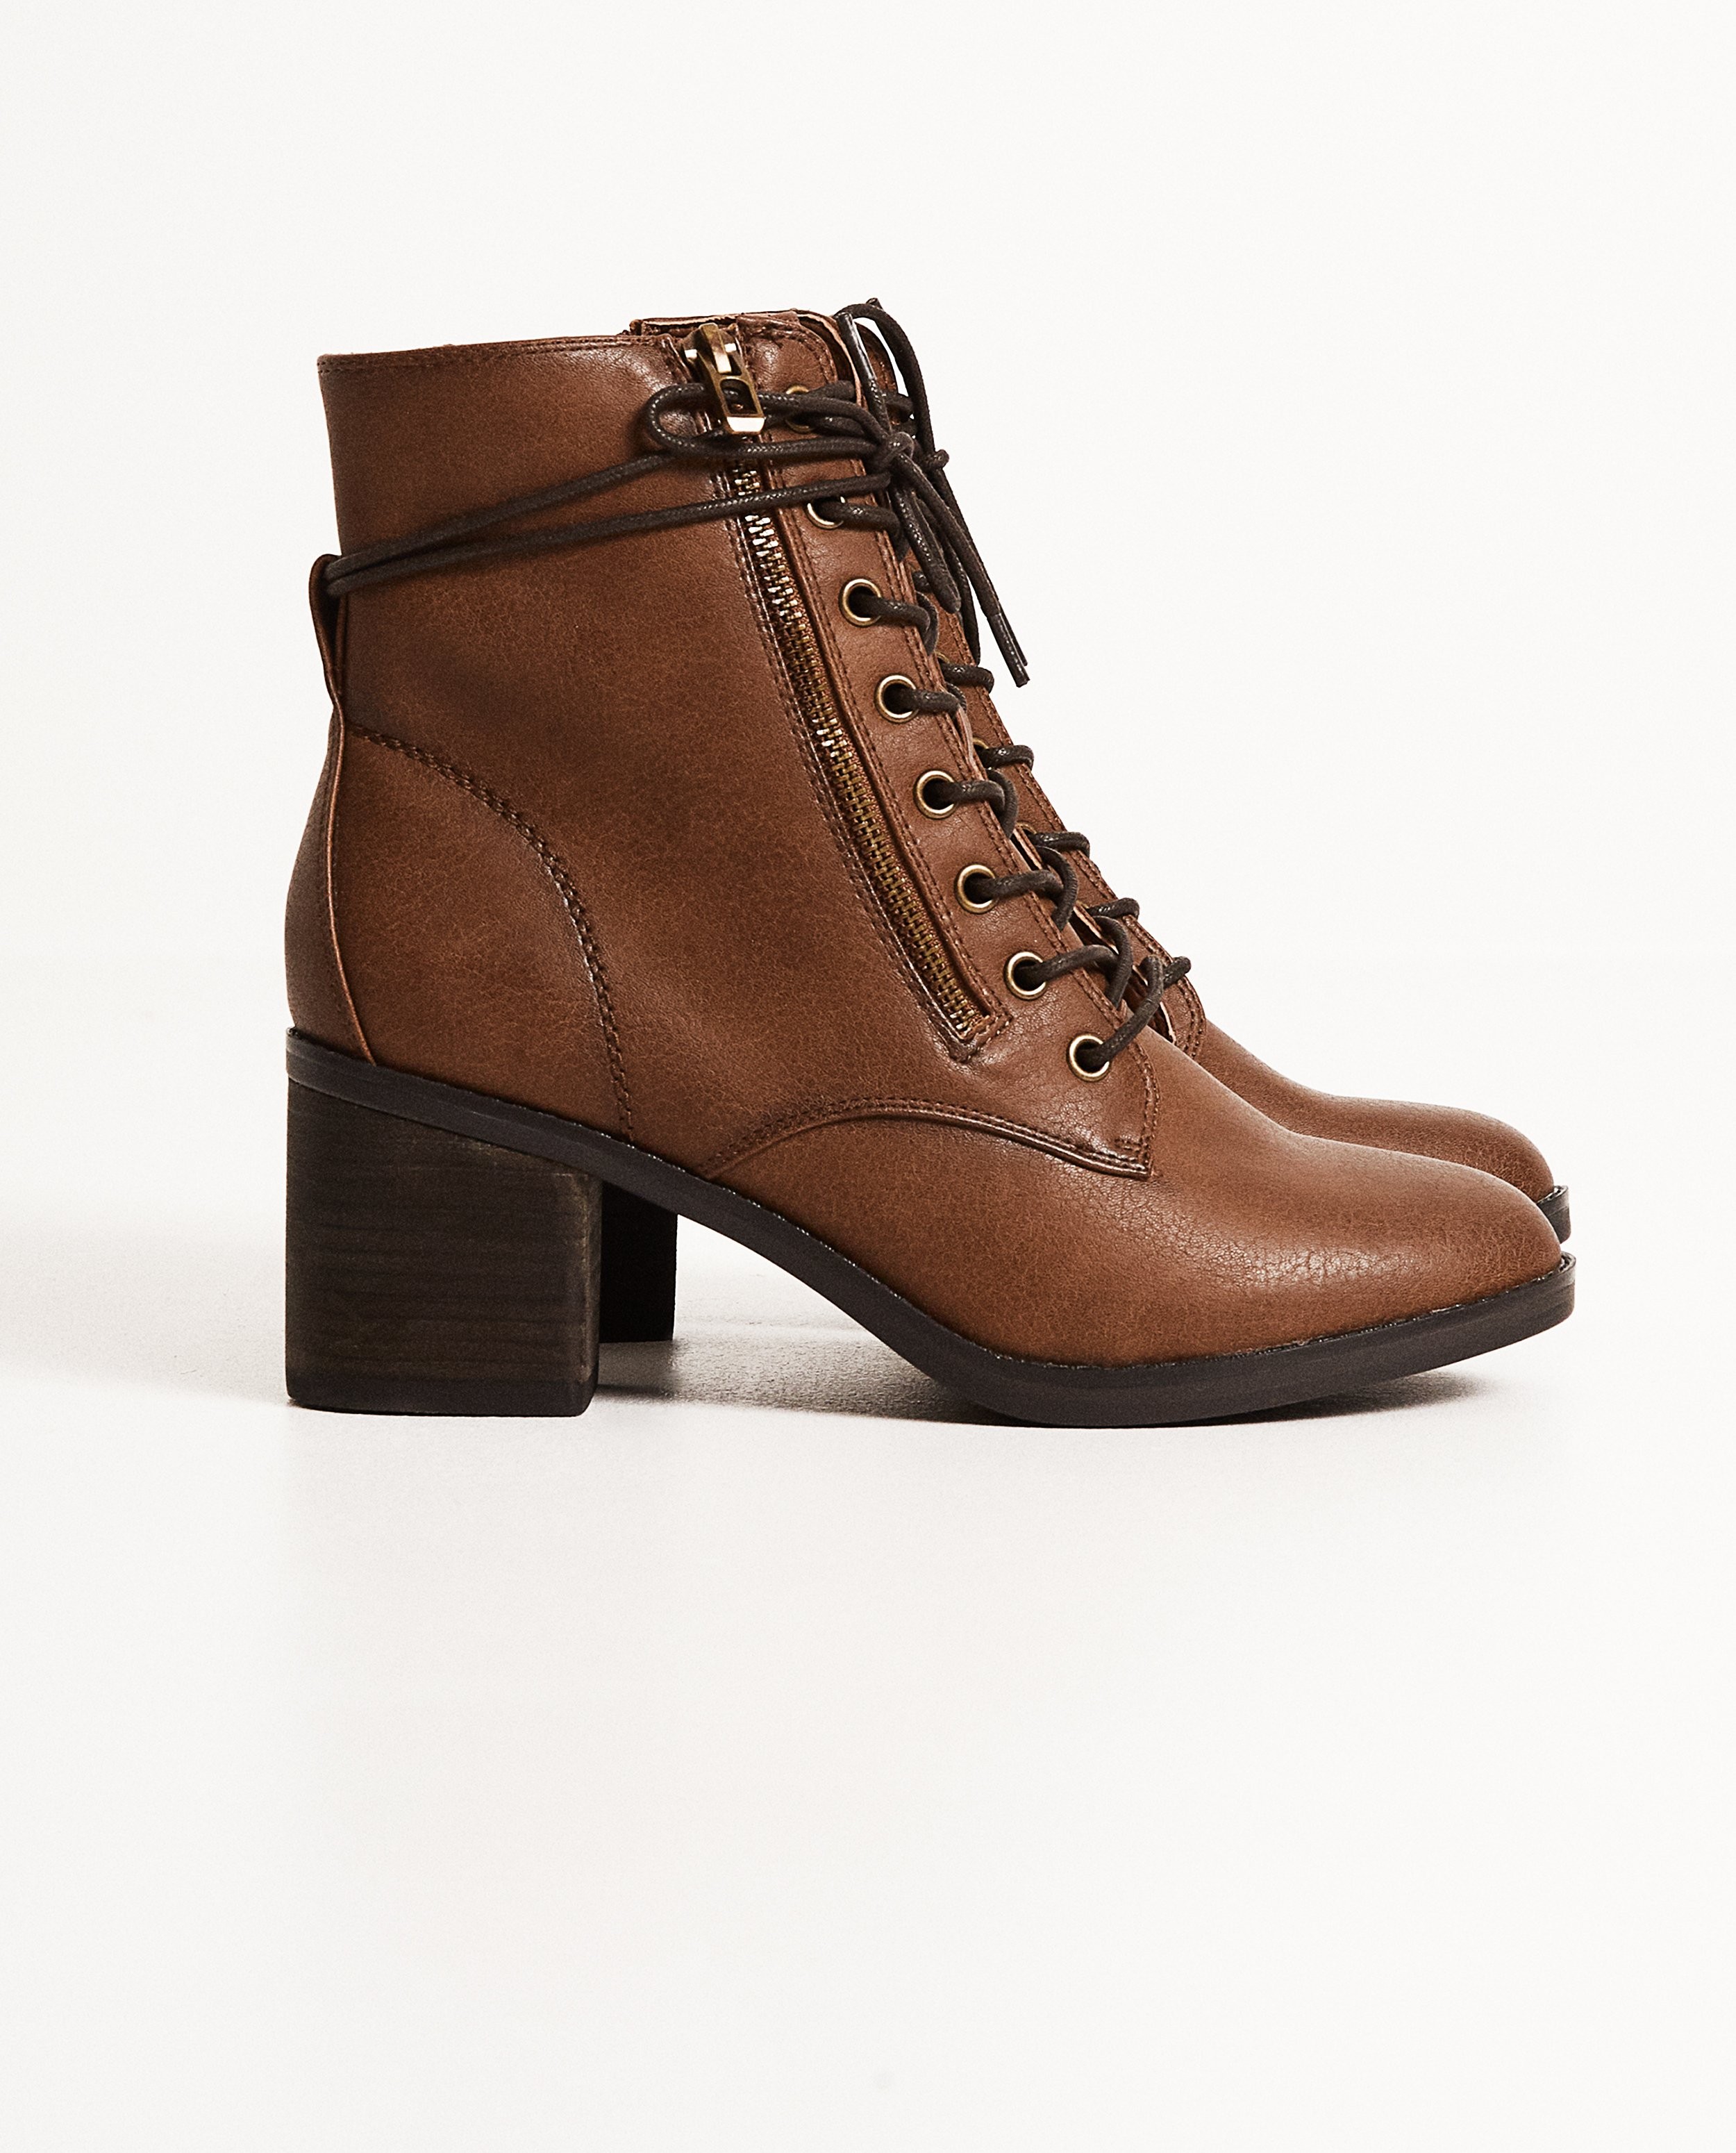 Bruine boots met hak - online only - Call it Spring